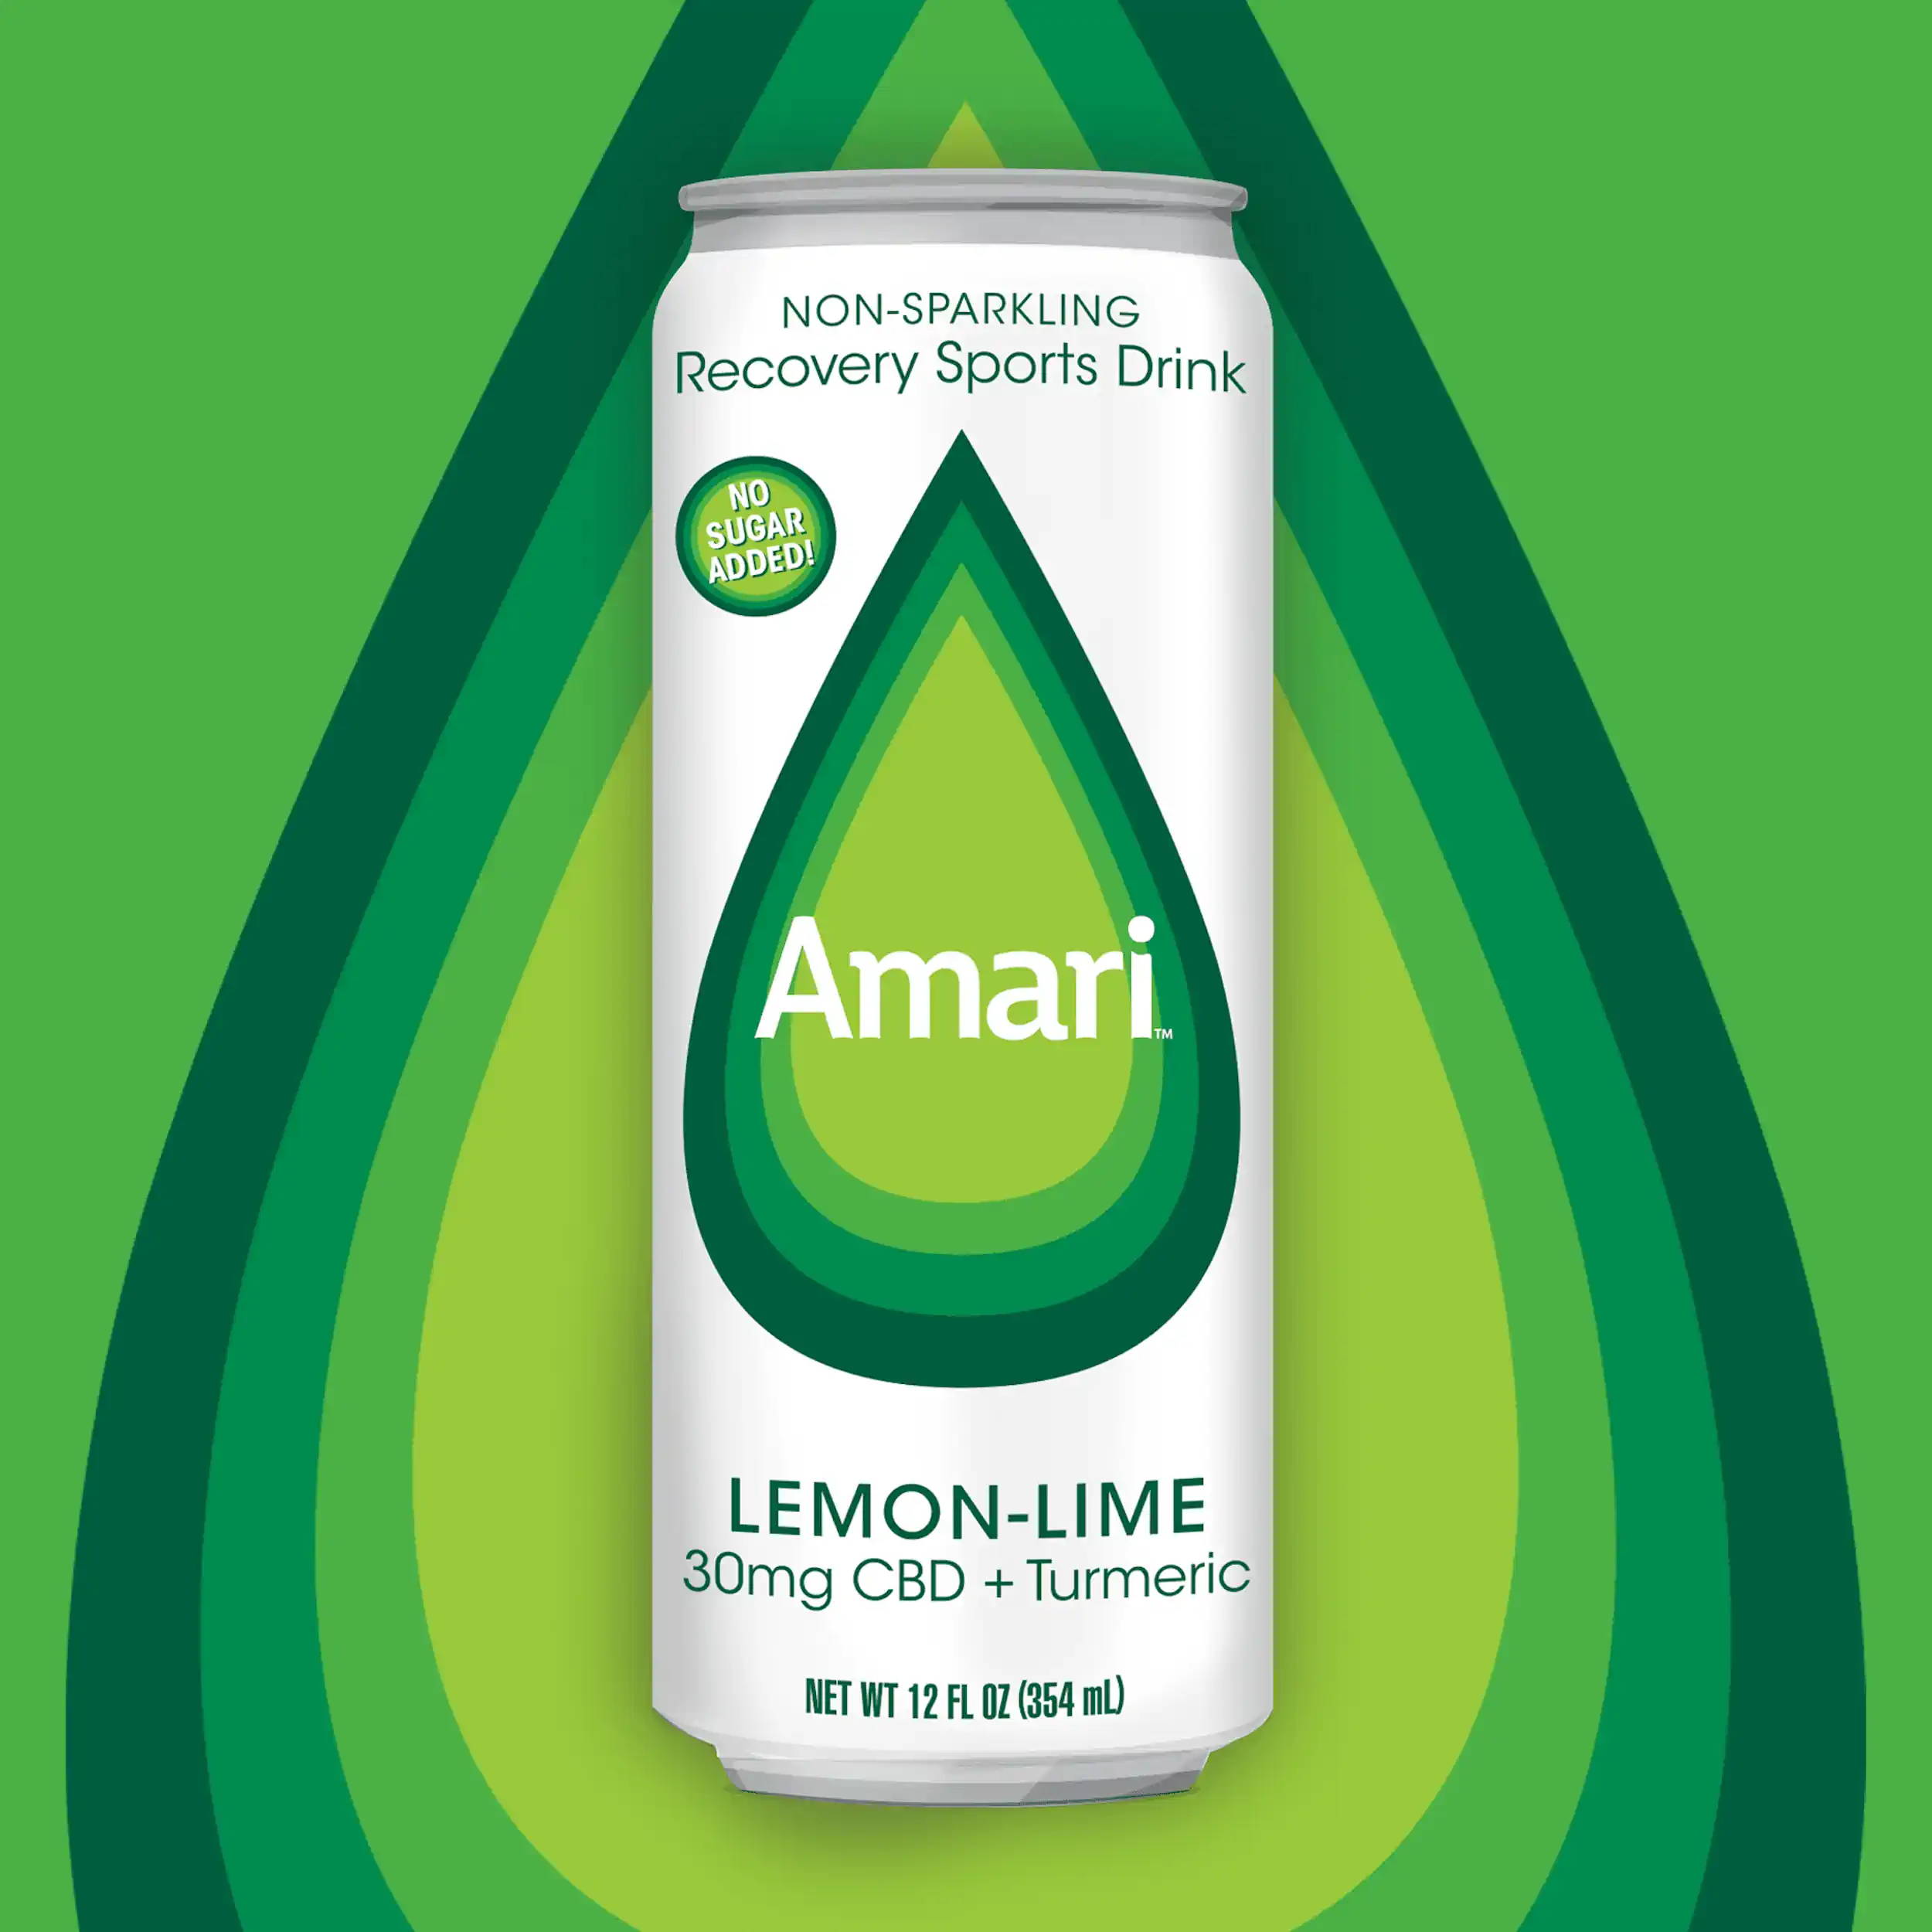 Can of Lemon-Lime Amari